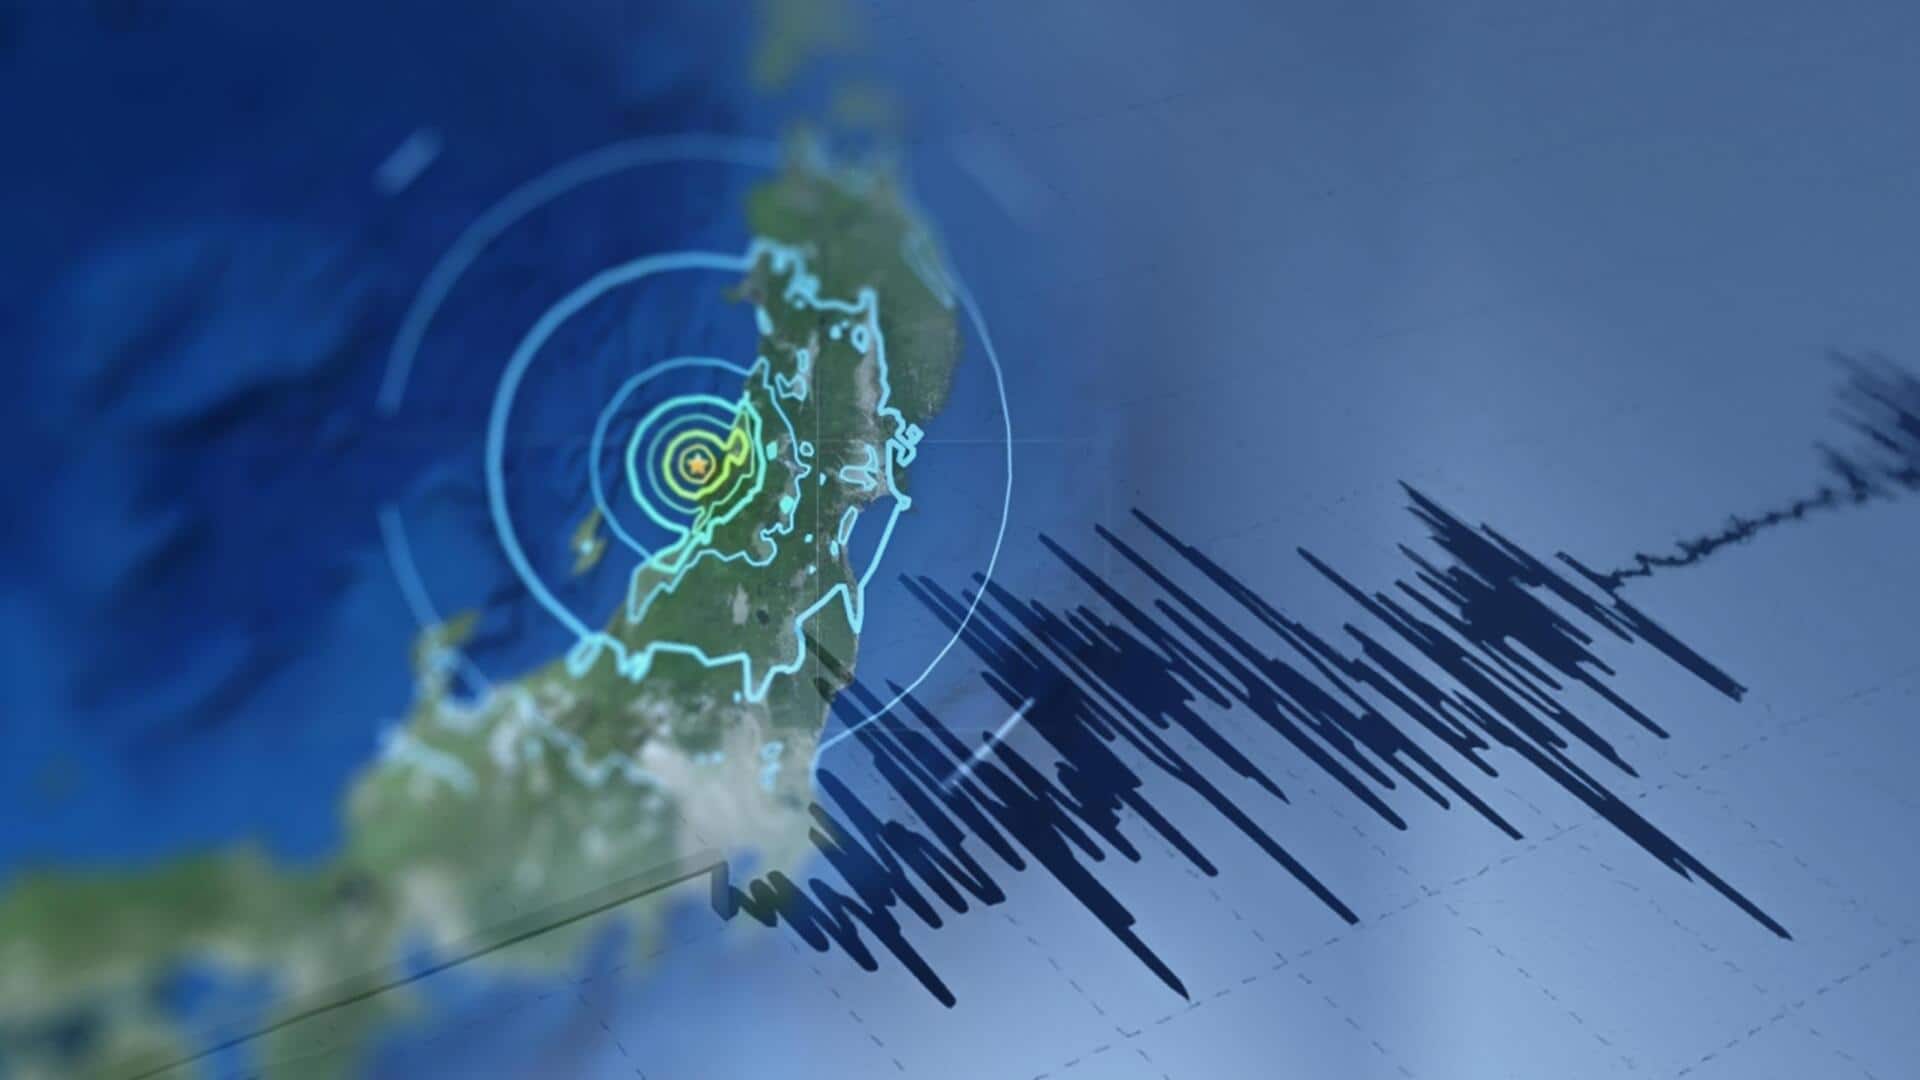 जापान में 7.6 तीव्रता के भूकंप के बाद सुनामी, शहर से टकराईं 1.2 मीटर ऊंची लहरें